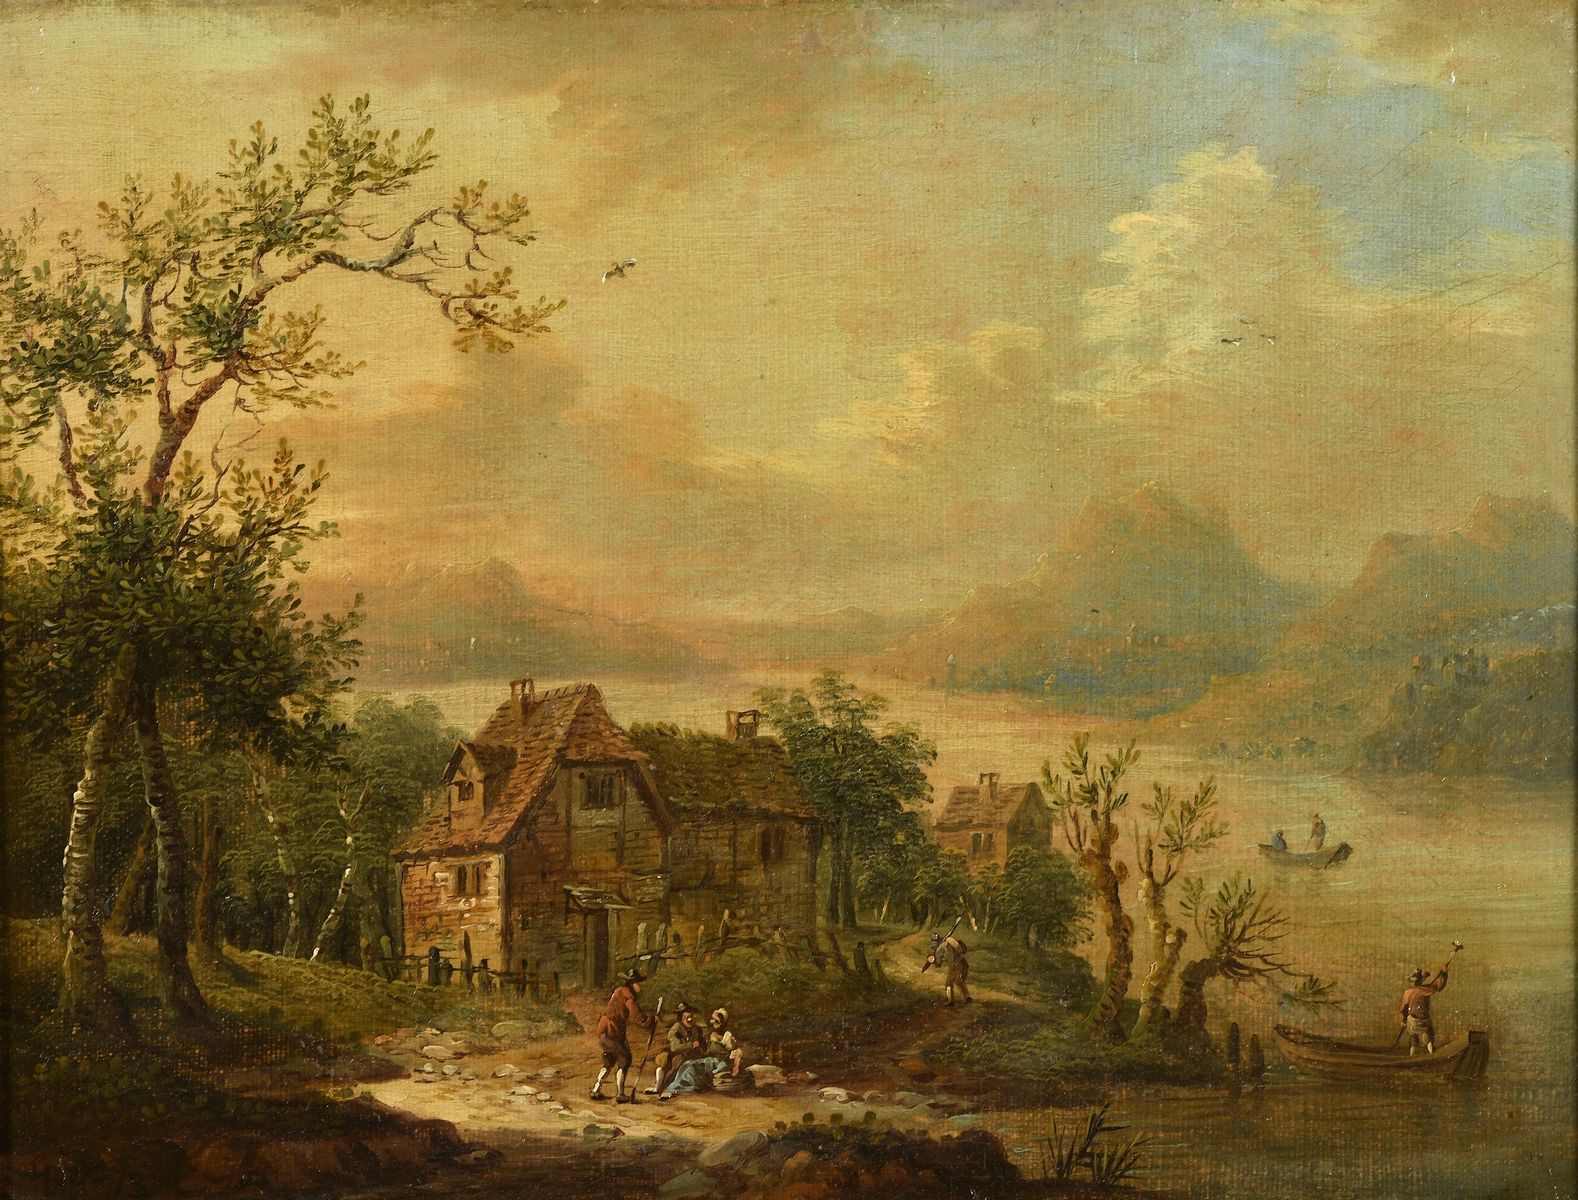 Null 舒茨-克里斯蒂安-乔治二世(归属)
弗洛瑟姆1758年--法兰克福1823年

莱茵河畔的小屋

布面油画（反转）。
左下角有注解HUET-73

H&hellip;